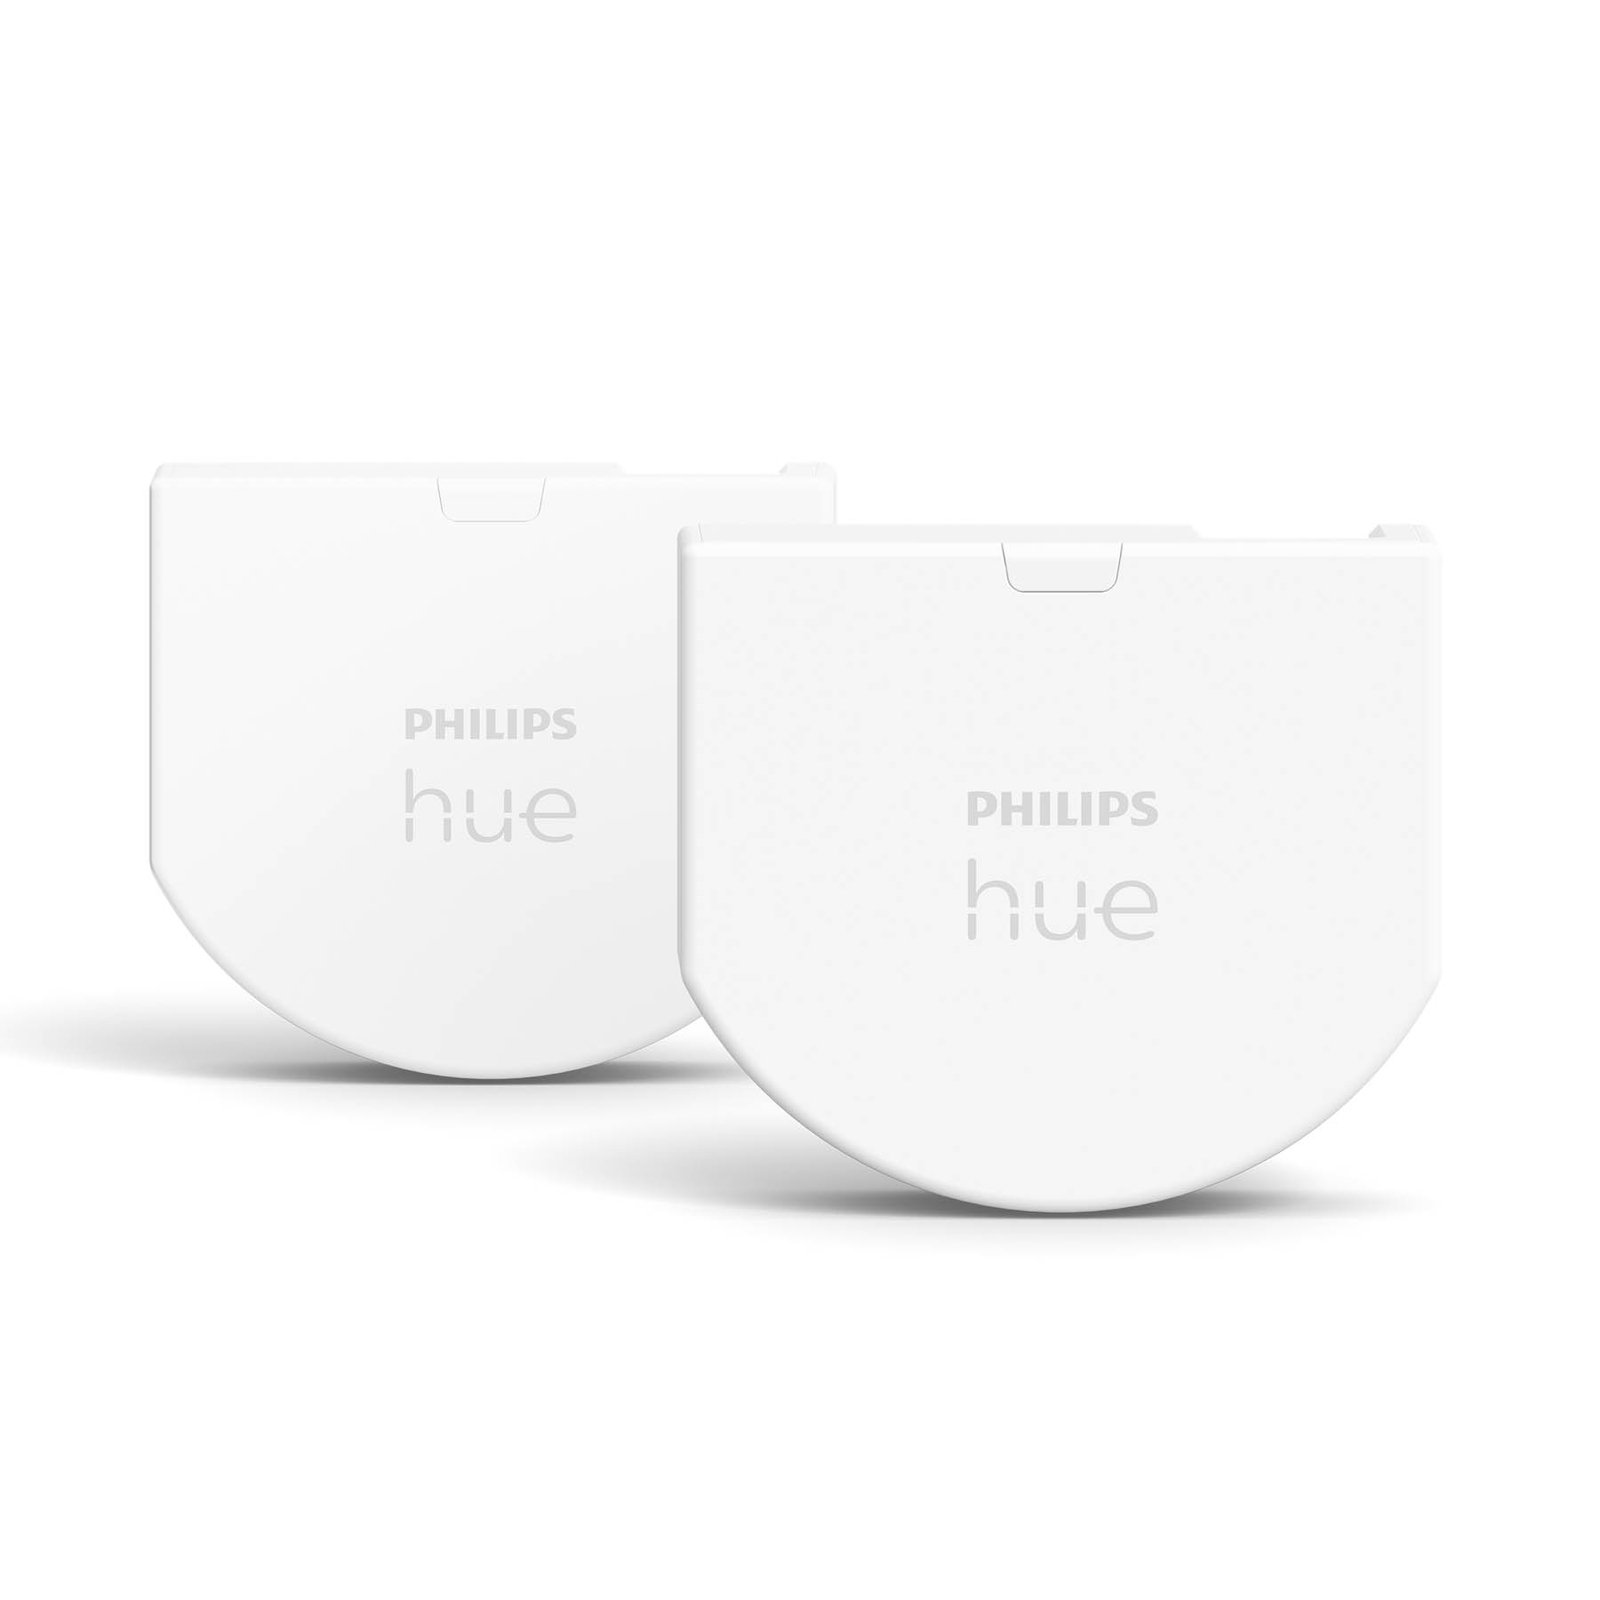 Philips Hue fali kapcsoló modul, 2 darabos csomag